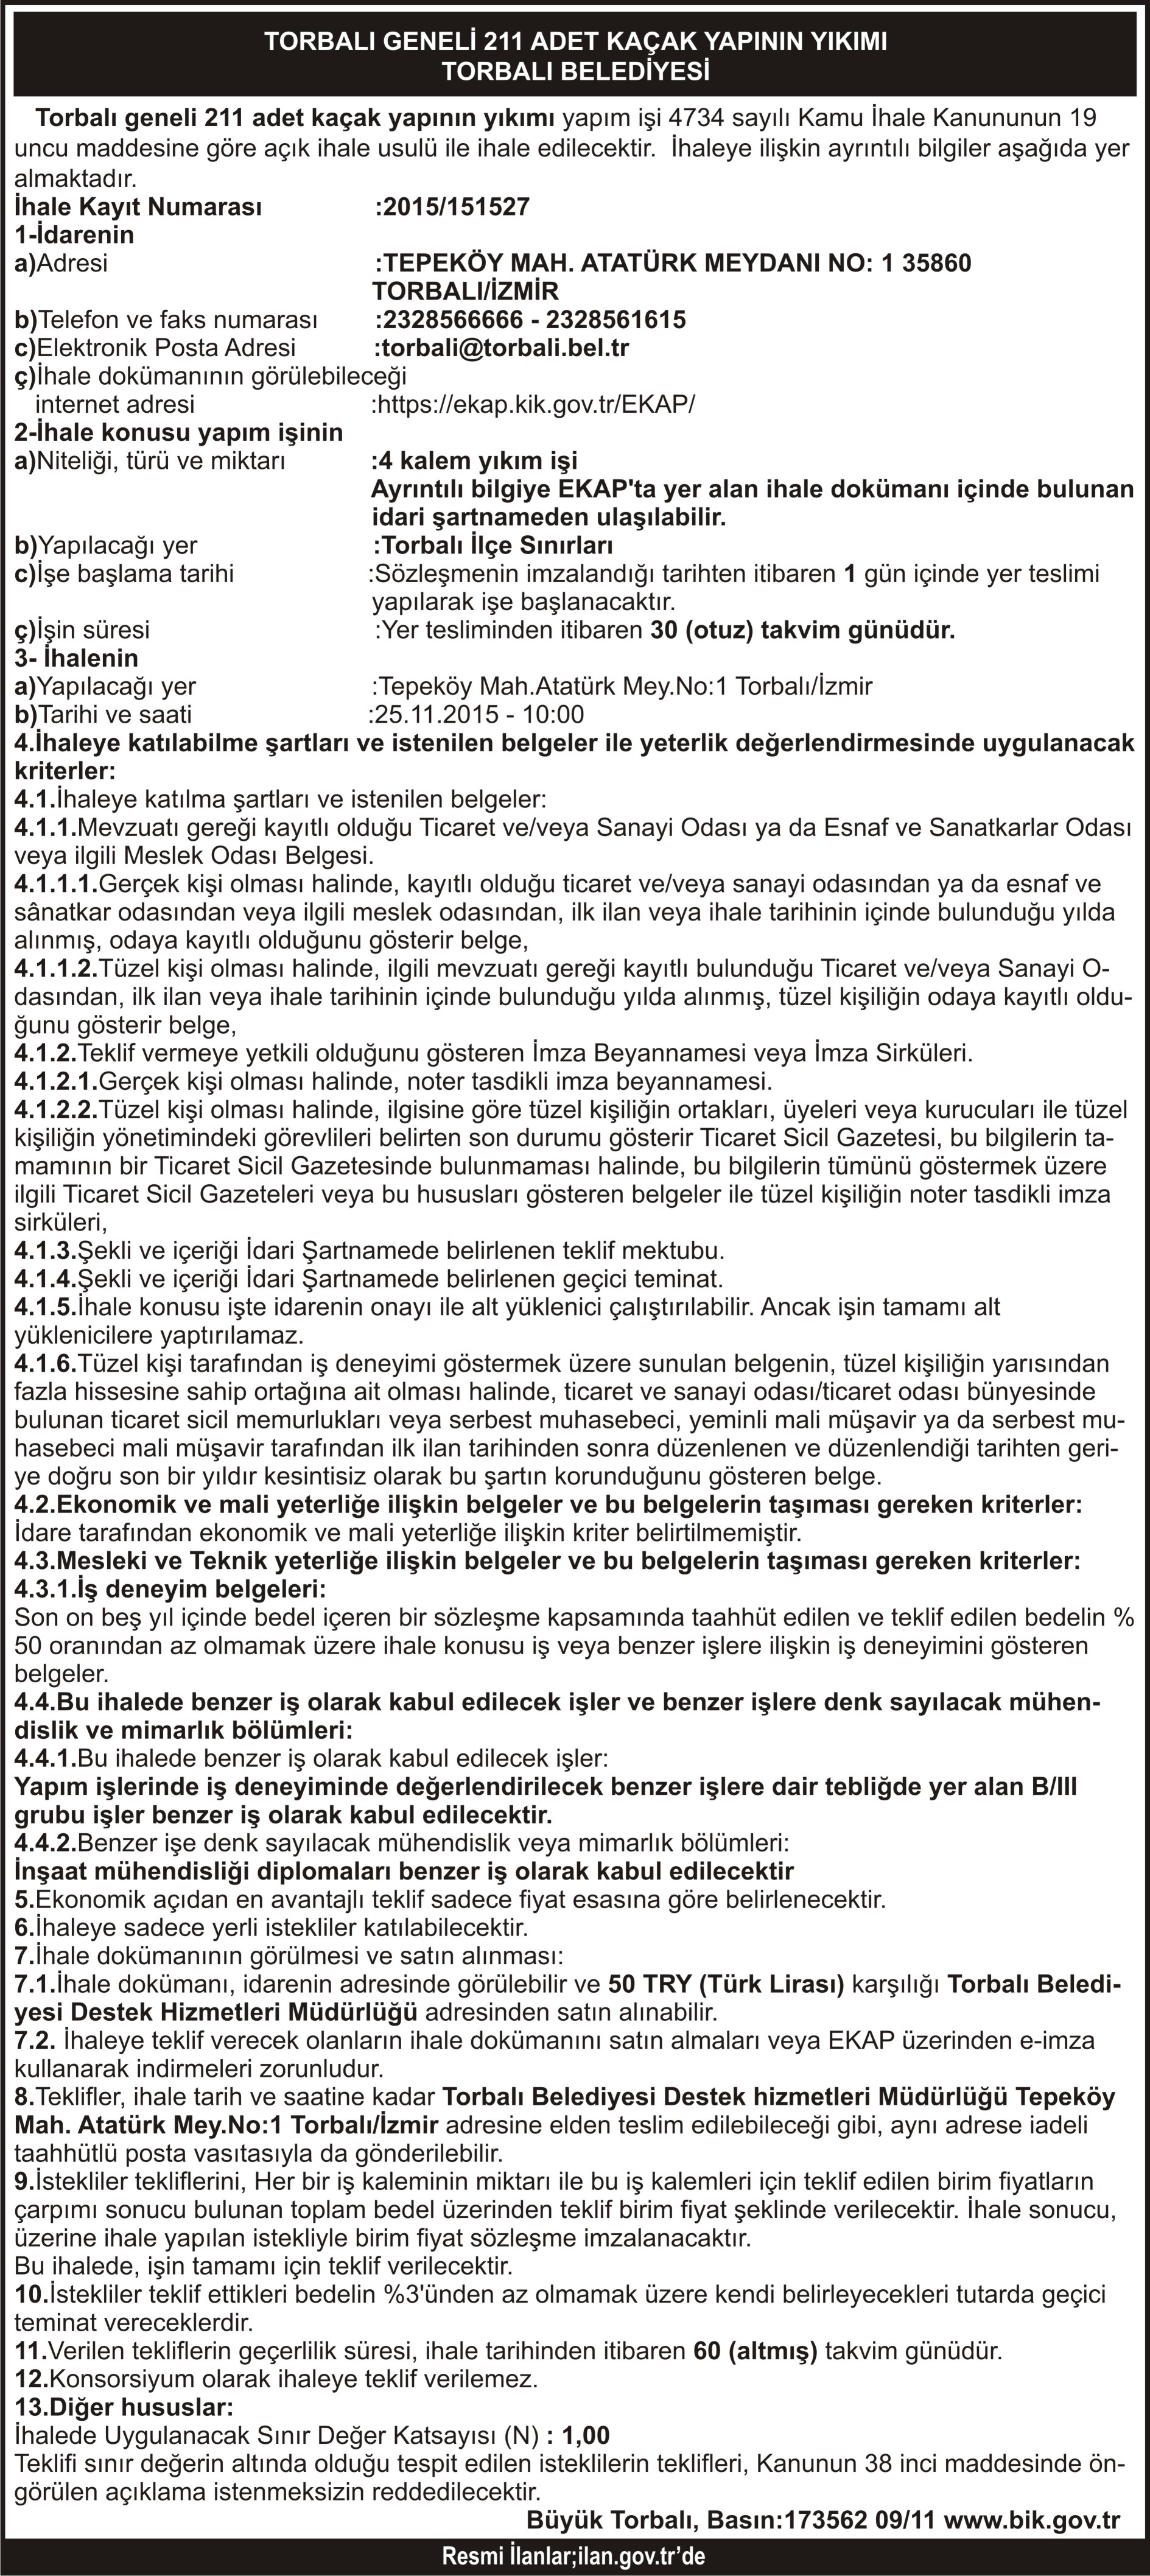 TORBALI GENELİ 211 ADET YAPININ YIKIMI TORBALI BELEDİYESİ BASIN.173562 09.11.2015